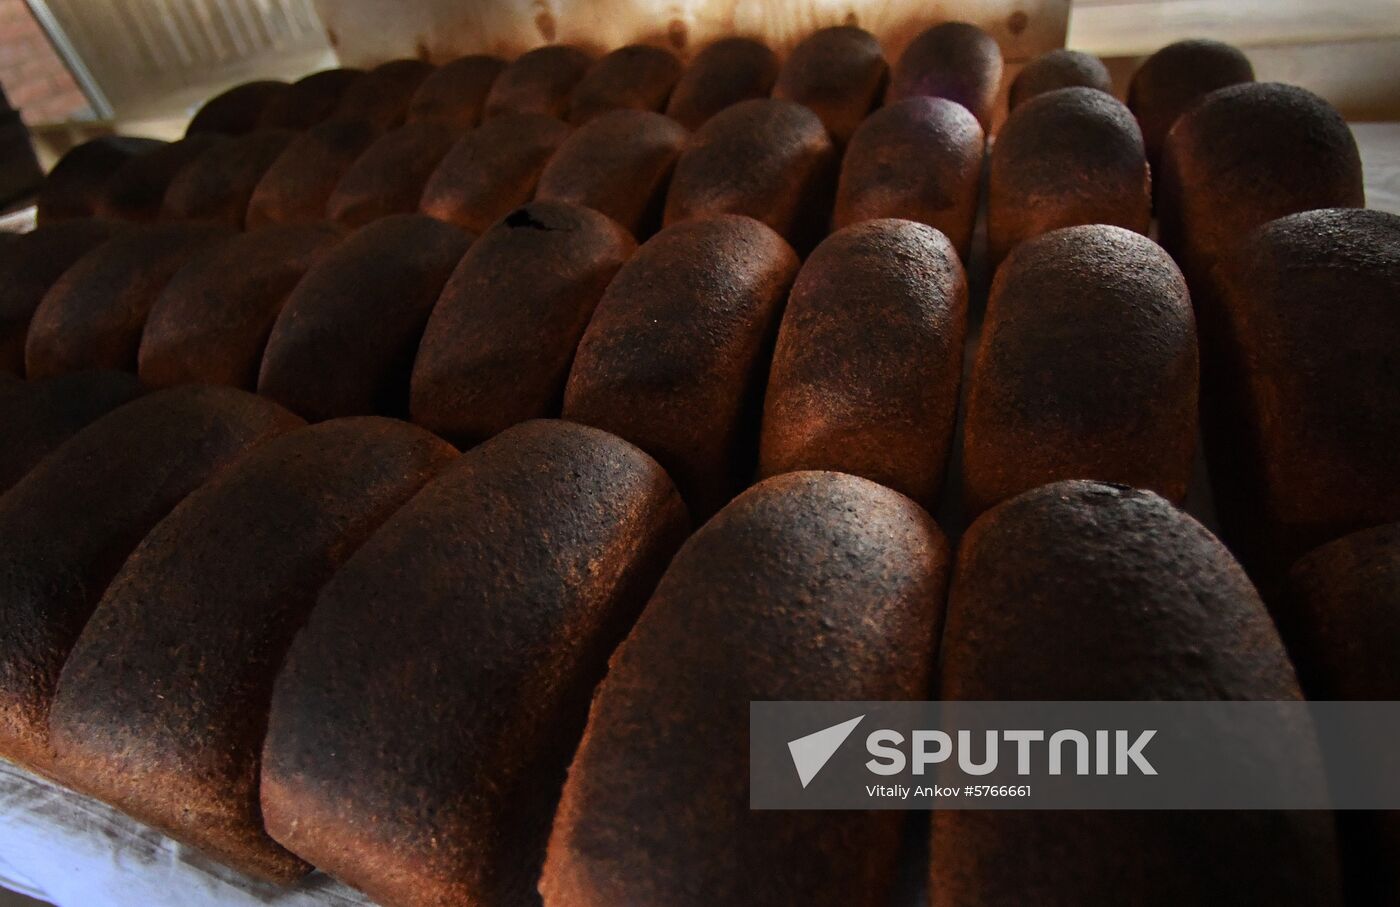 Russia Bread